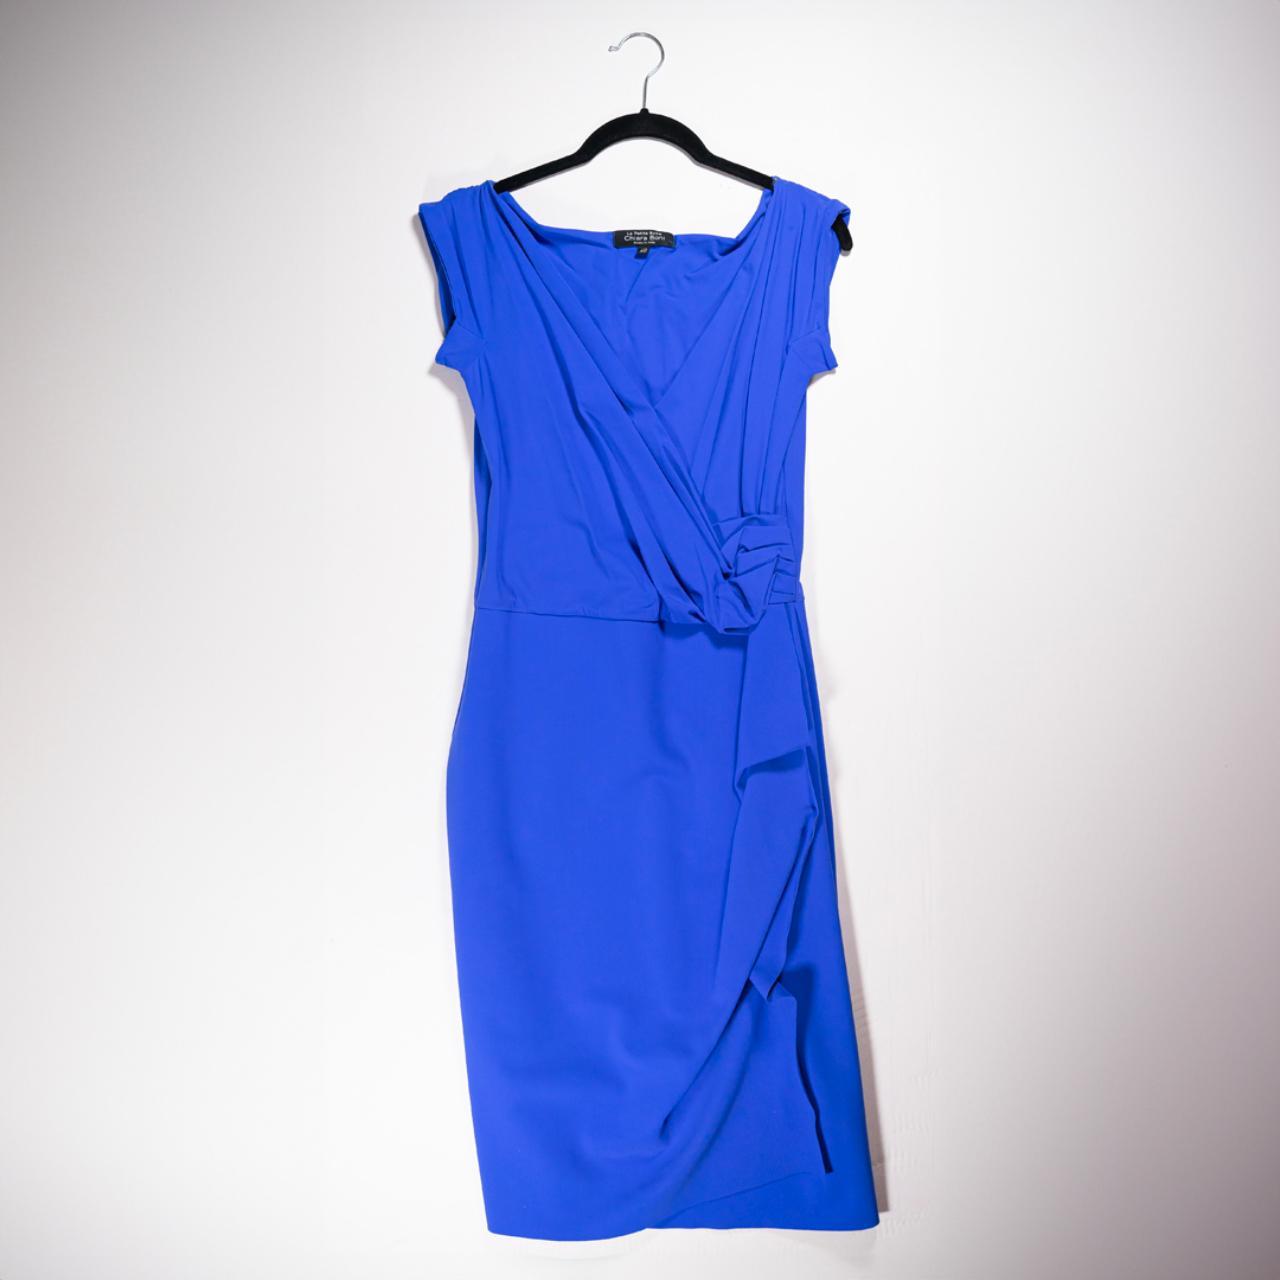 Chiara Boni La Petite Robe Women's Blue and Navy Dress